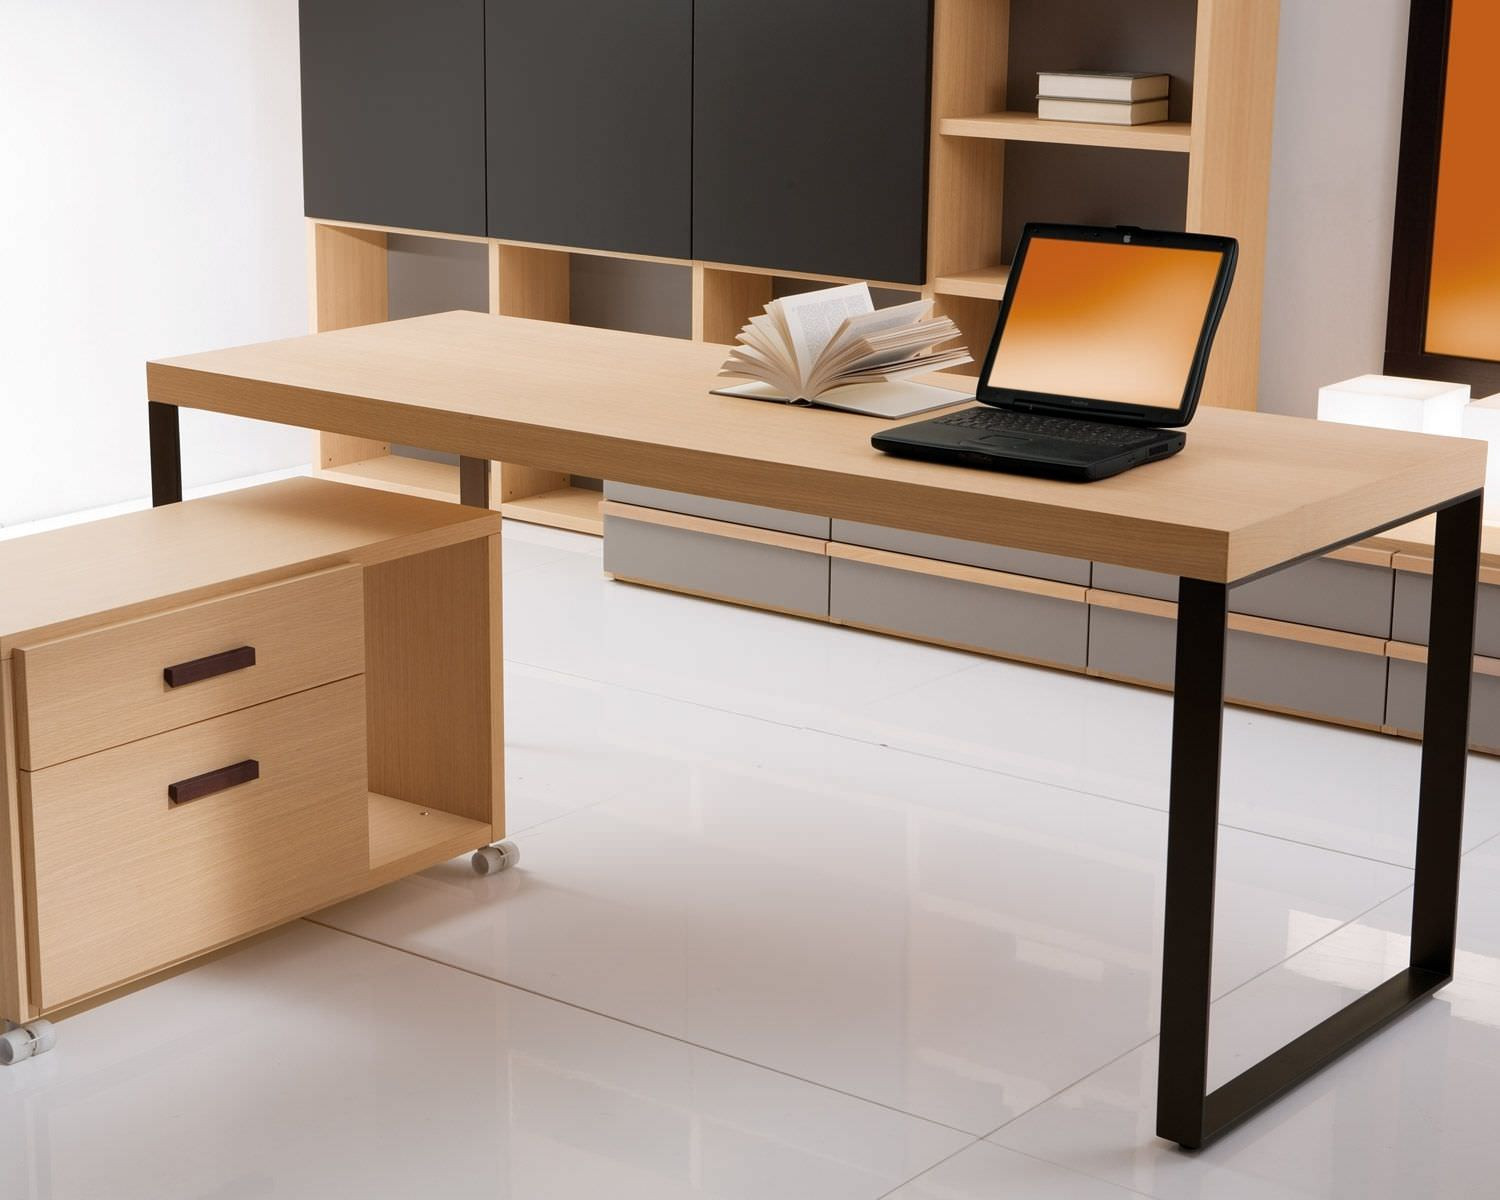 Moderner Schreibtisch
 Moderne Schreibtische zu Hause